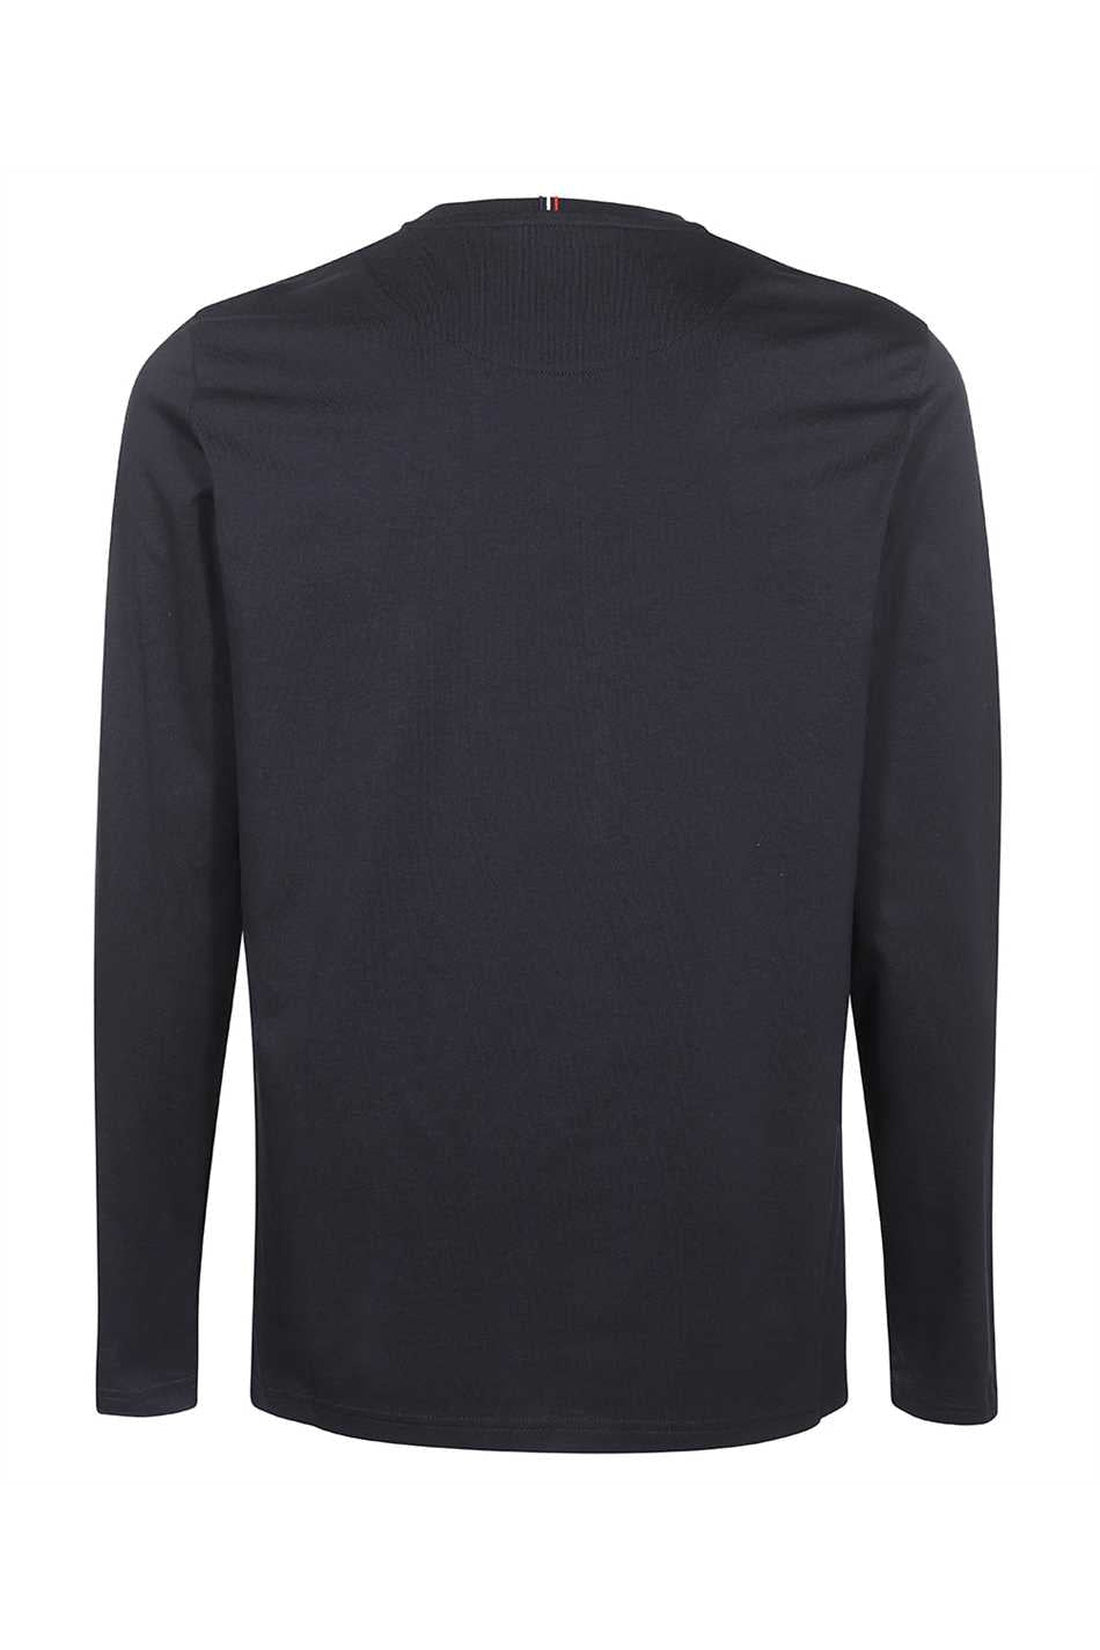 Les Deux-OUTLET-SALE-Long sleeve cotton t-shirt-ARCHIVIST